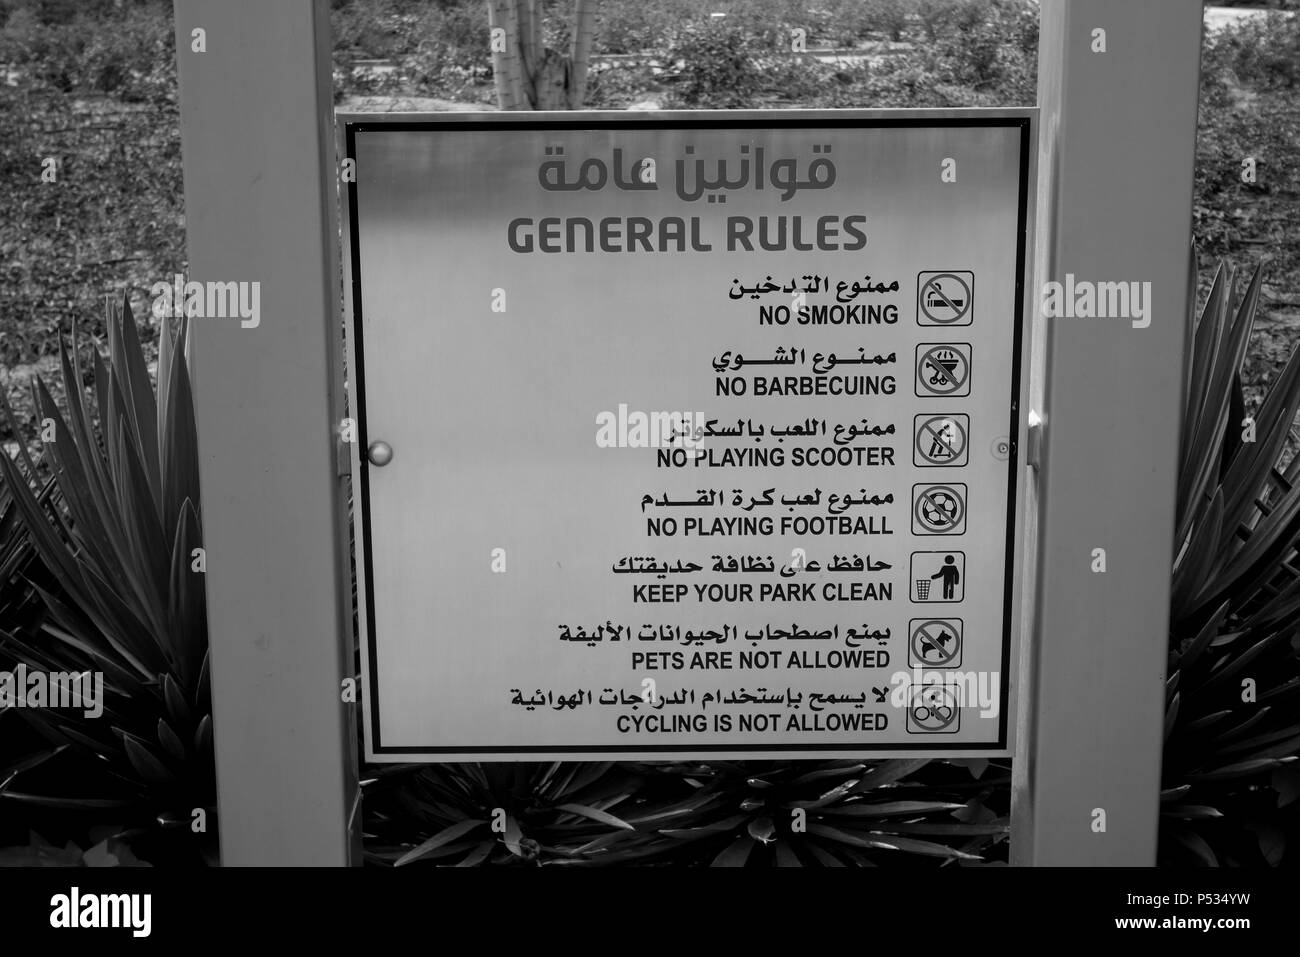 Liste des règles et règlements du parc en anglais et arabe affiché dans un parc public, la ville de Koweït, Koweït, golfe Persique, au Moyen-Orient Banque D'Images